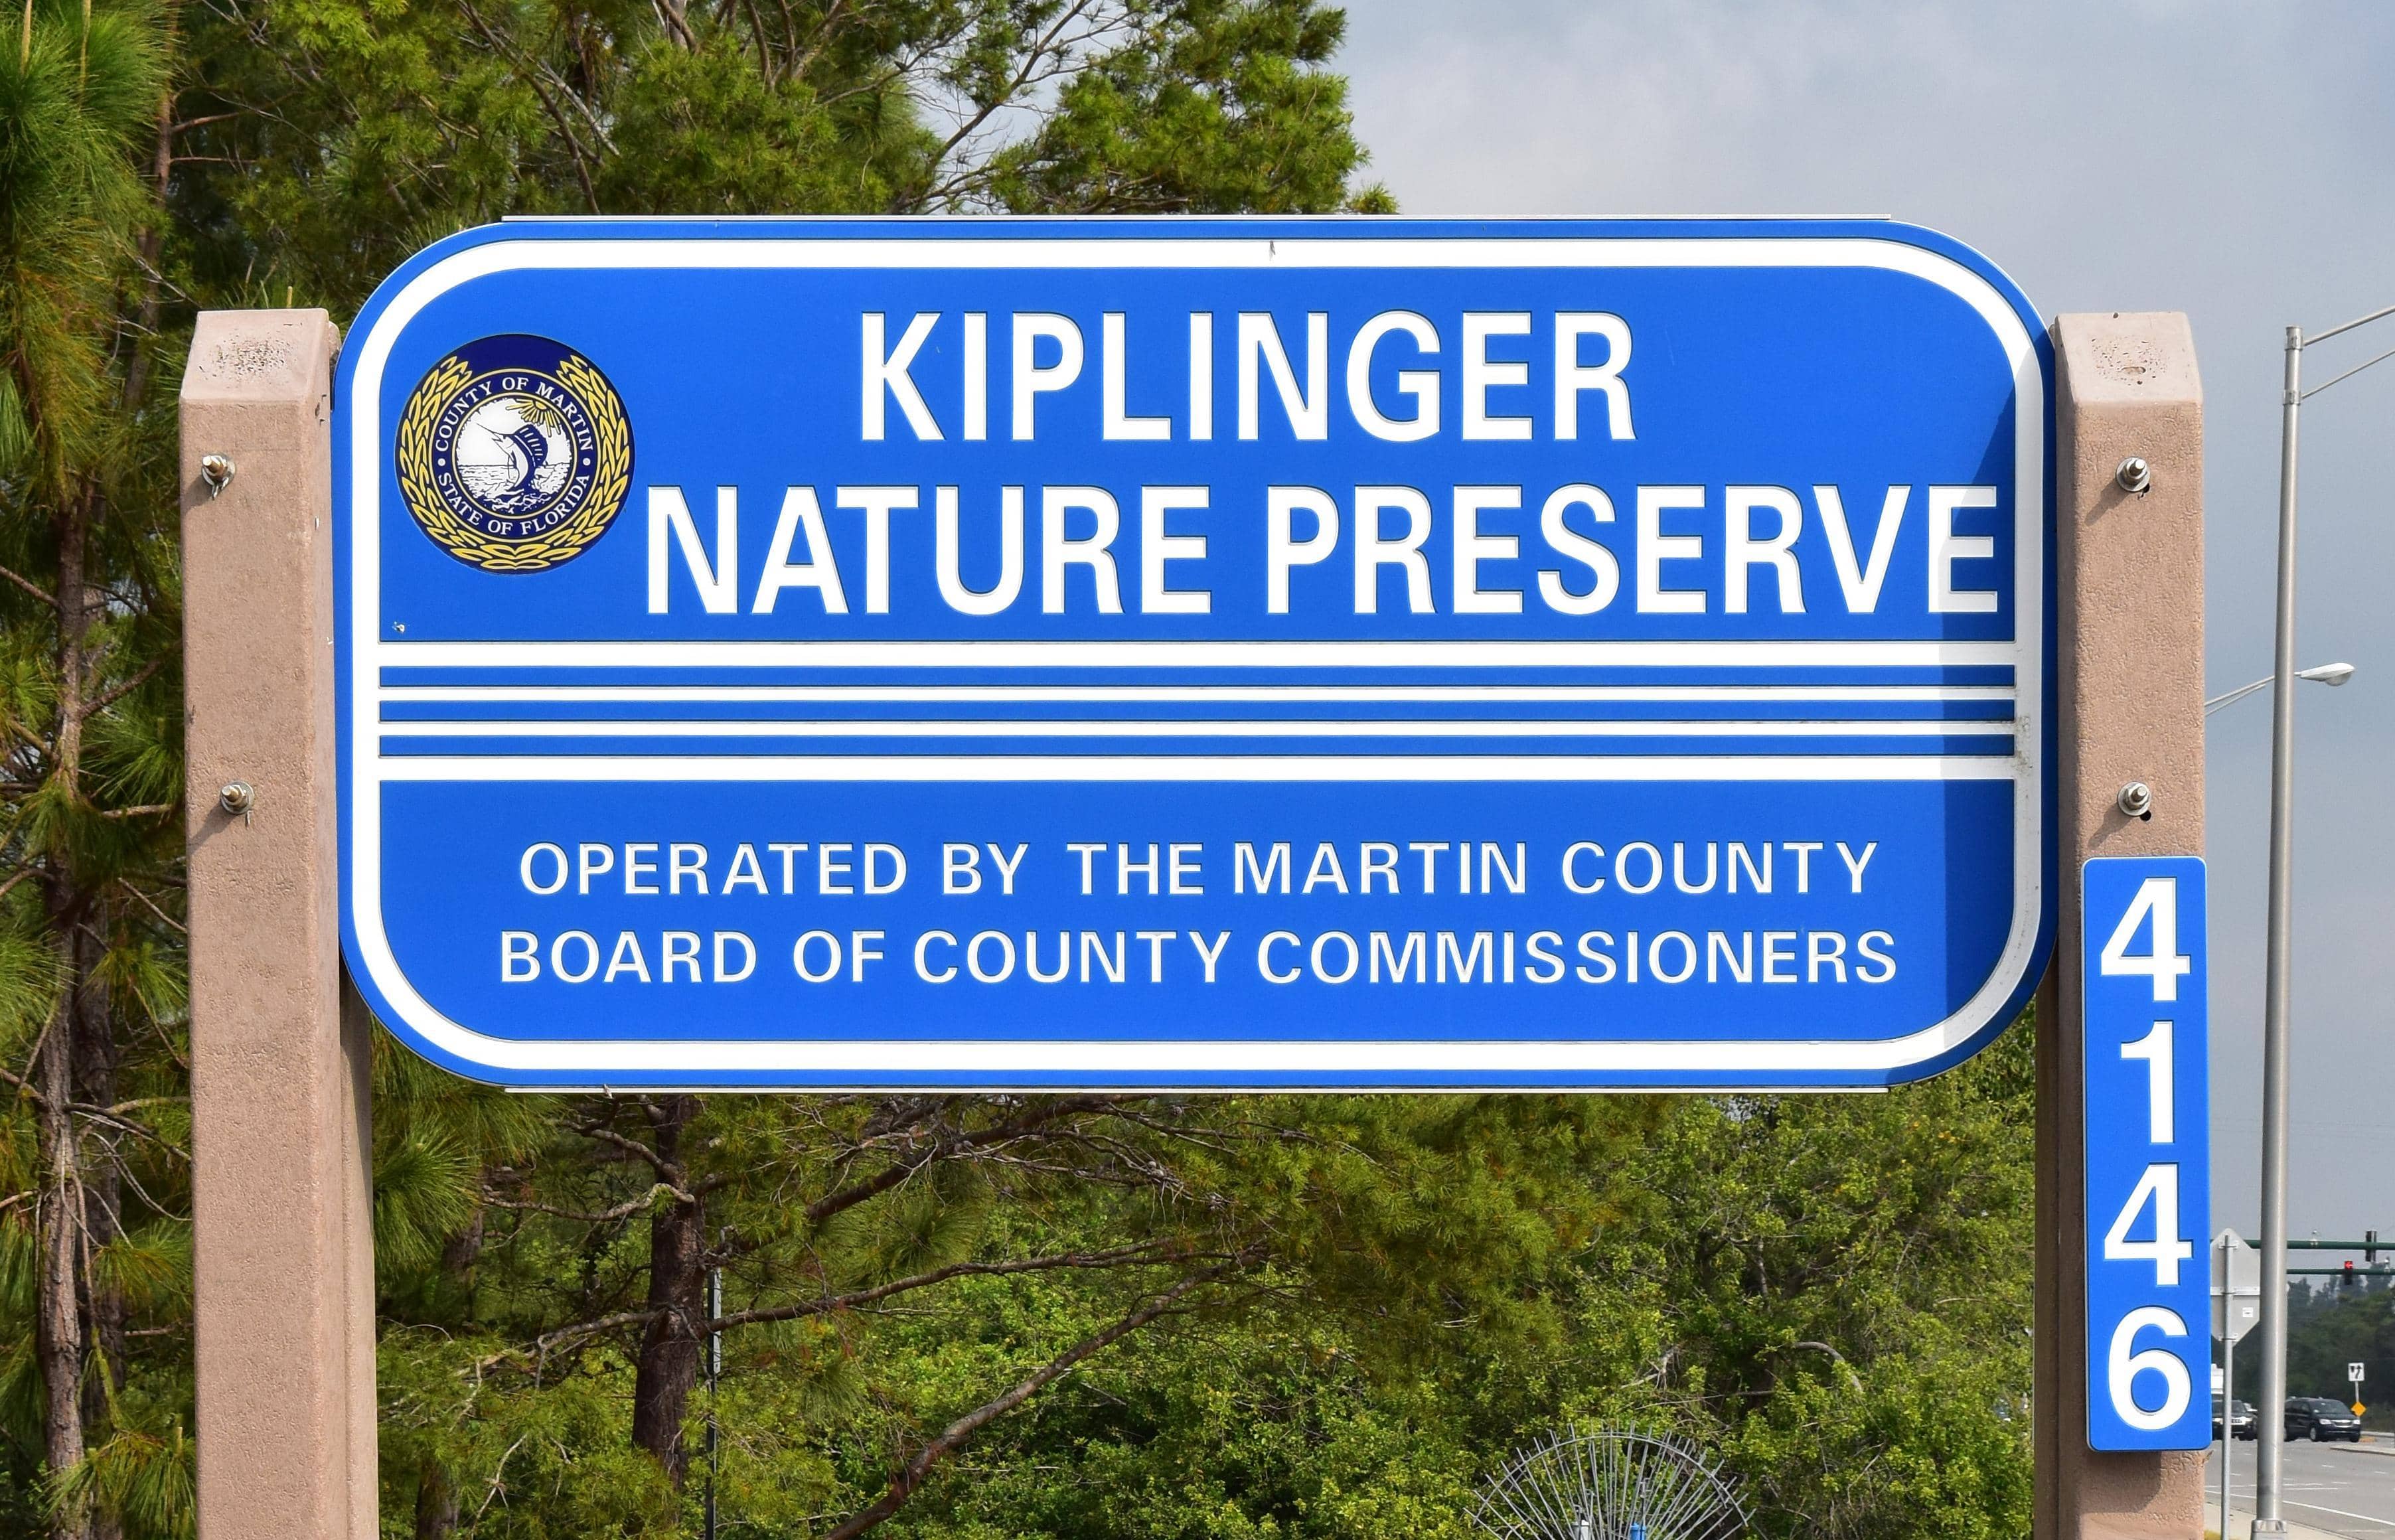 The signage at Kiplinger Nature Preserve